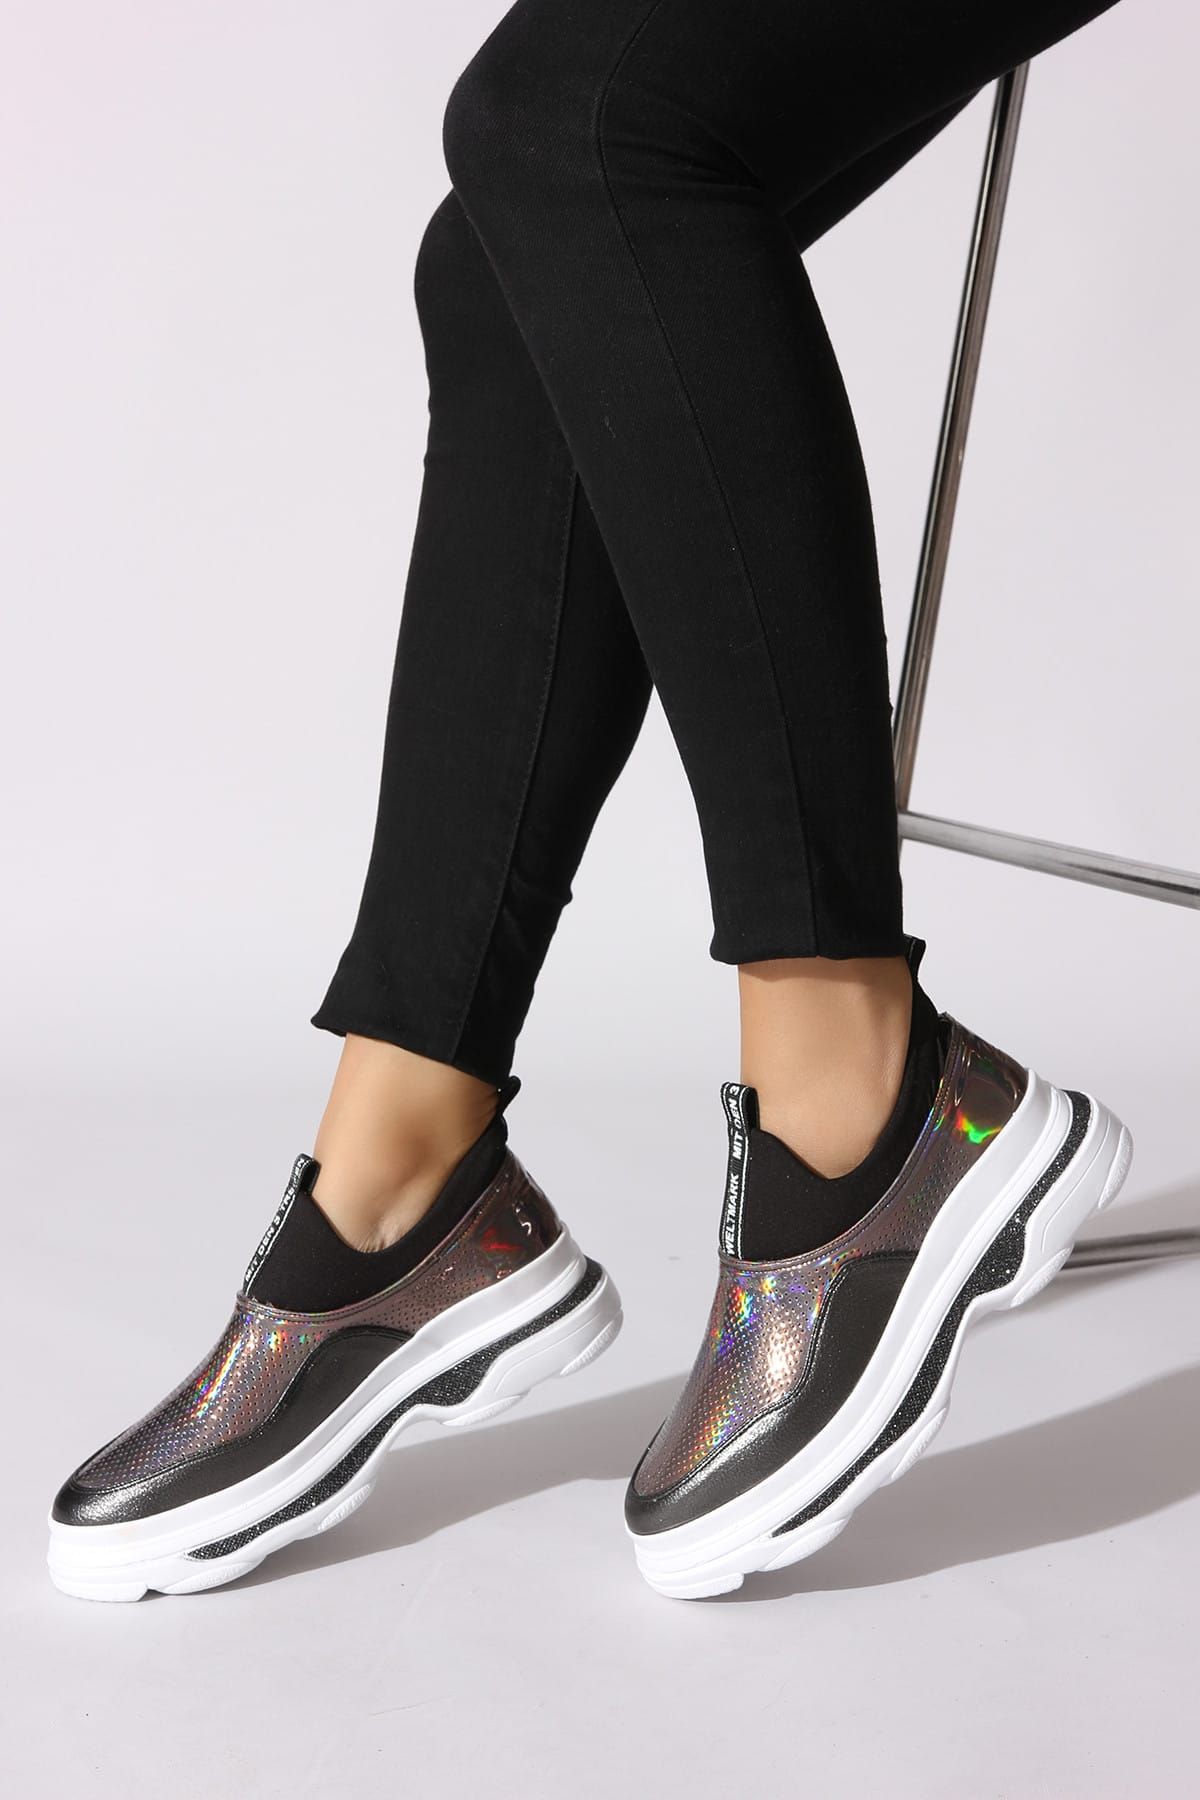 Rovigo Siyah Platin Kadın Sneaker 504C-1001-S-02